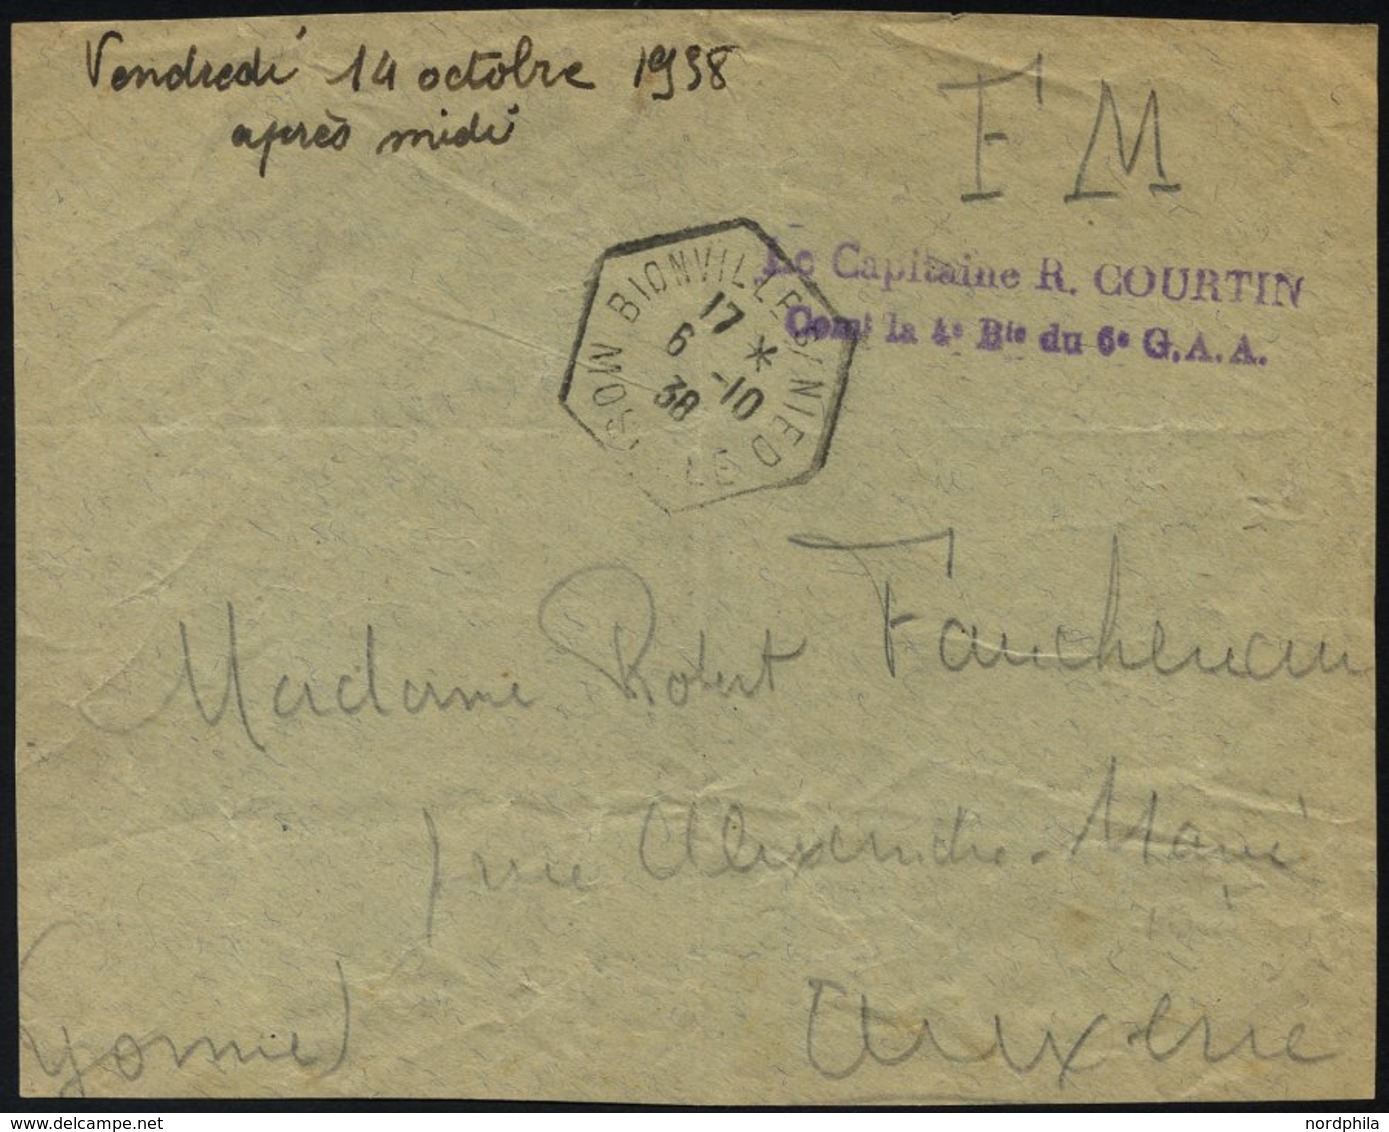 FRANKREICH FELDPOST 1938, Violetter Absenderstempel Le Capitaine R. Courtin, Con La 4 D Du 6 G.A.A. Auf Briefvorderseite - War Stamps